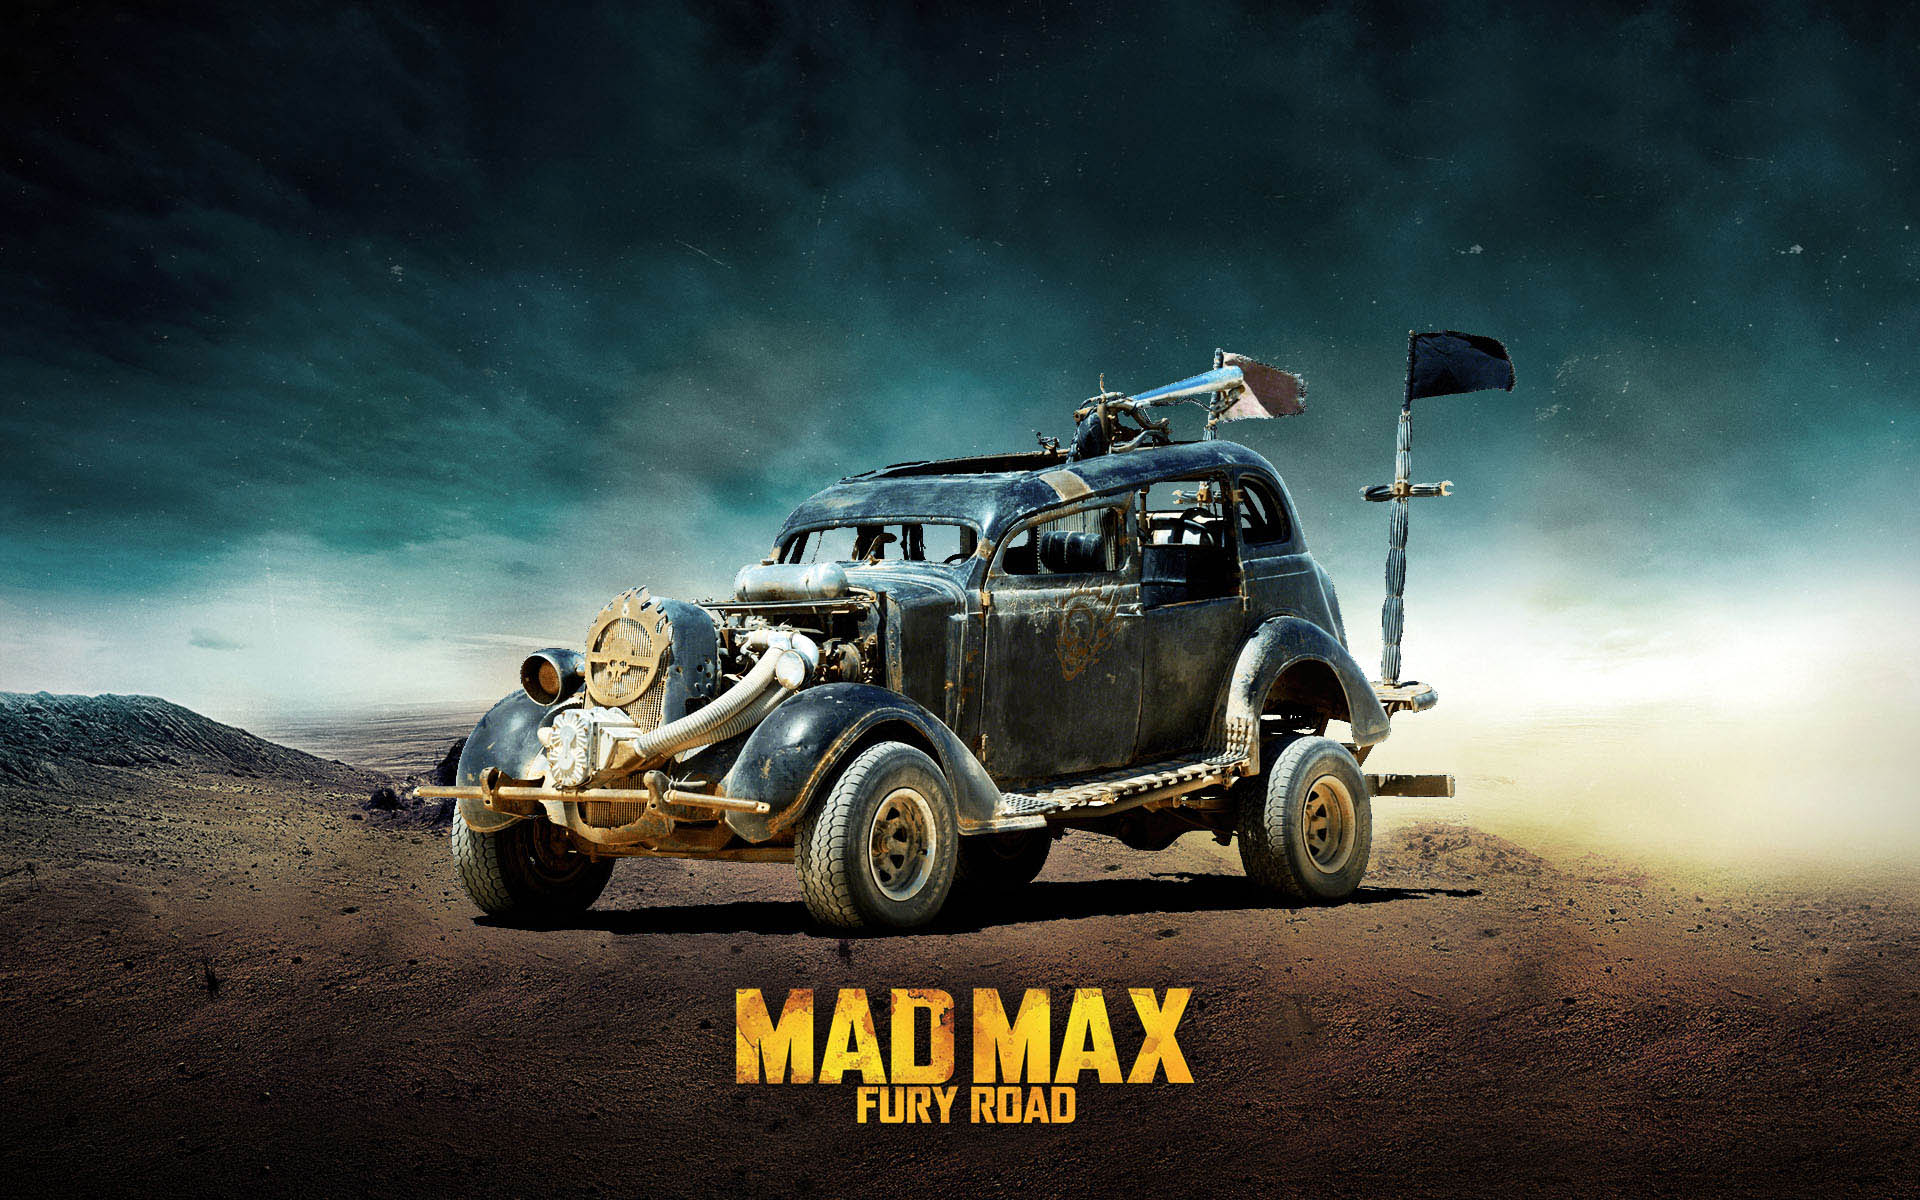 Dodge Mad Max Fury Road Wallpaper Jpg